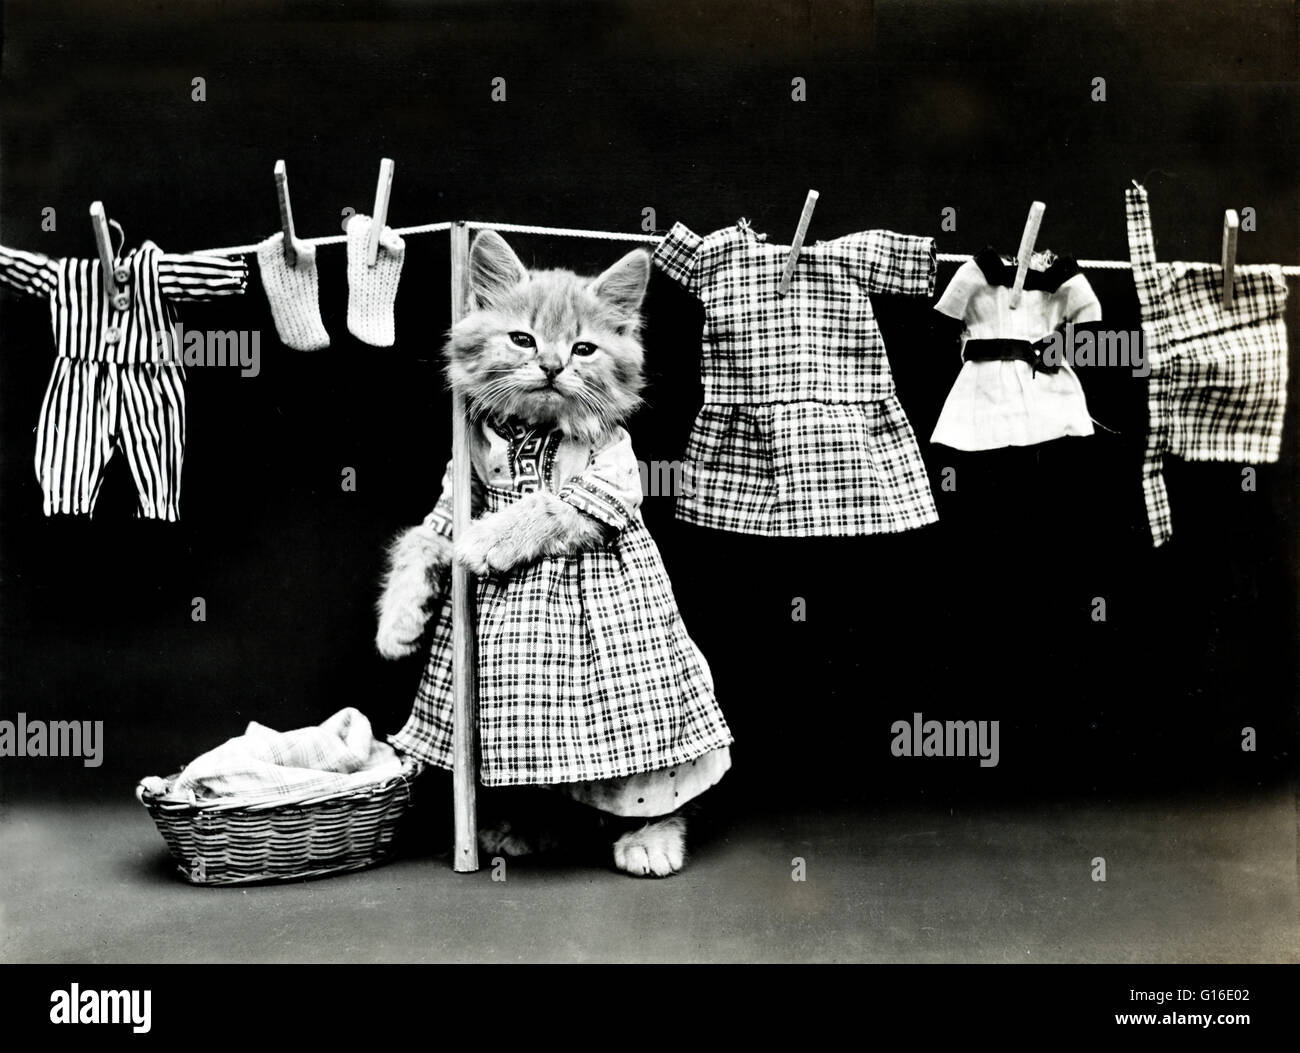 Unter dem Titel: "Die Wäsche aufhängen" zeigt eine Kätzchen trägt ein Kleid und hängende Kleidung auf einer Wäscheleine. Harry Whittier befreit (1879-1953) war ein US-amerikanischer Fotograf, der lebende Tiere gekleidet und posierte in menschlichen Situationen mit Requisiten fotografiert. Sein Tier Stockfoto